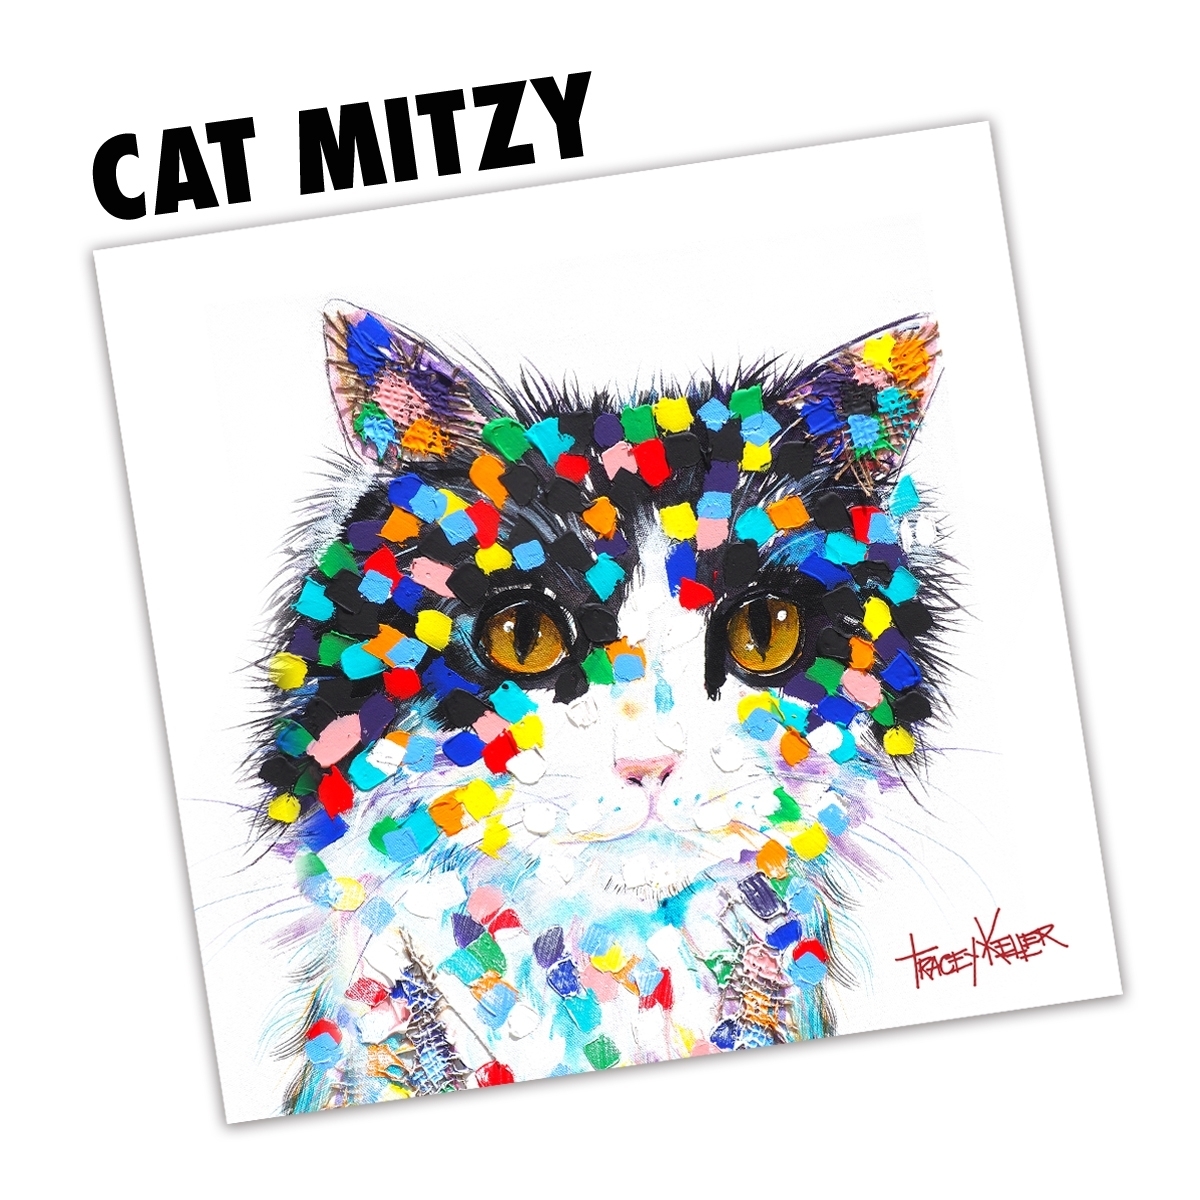 Cat Mitzy